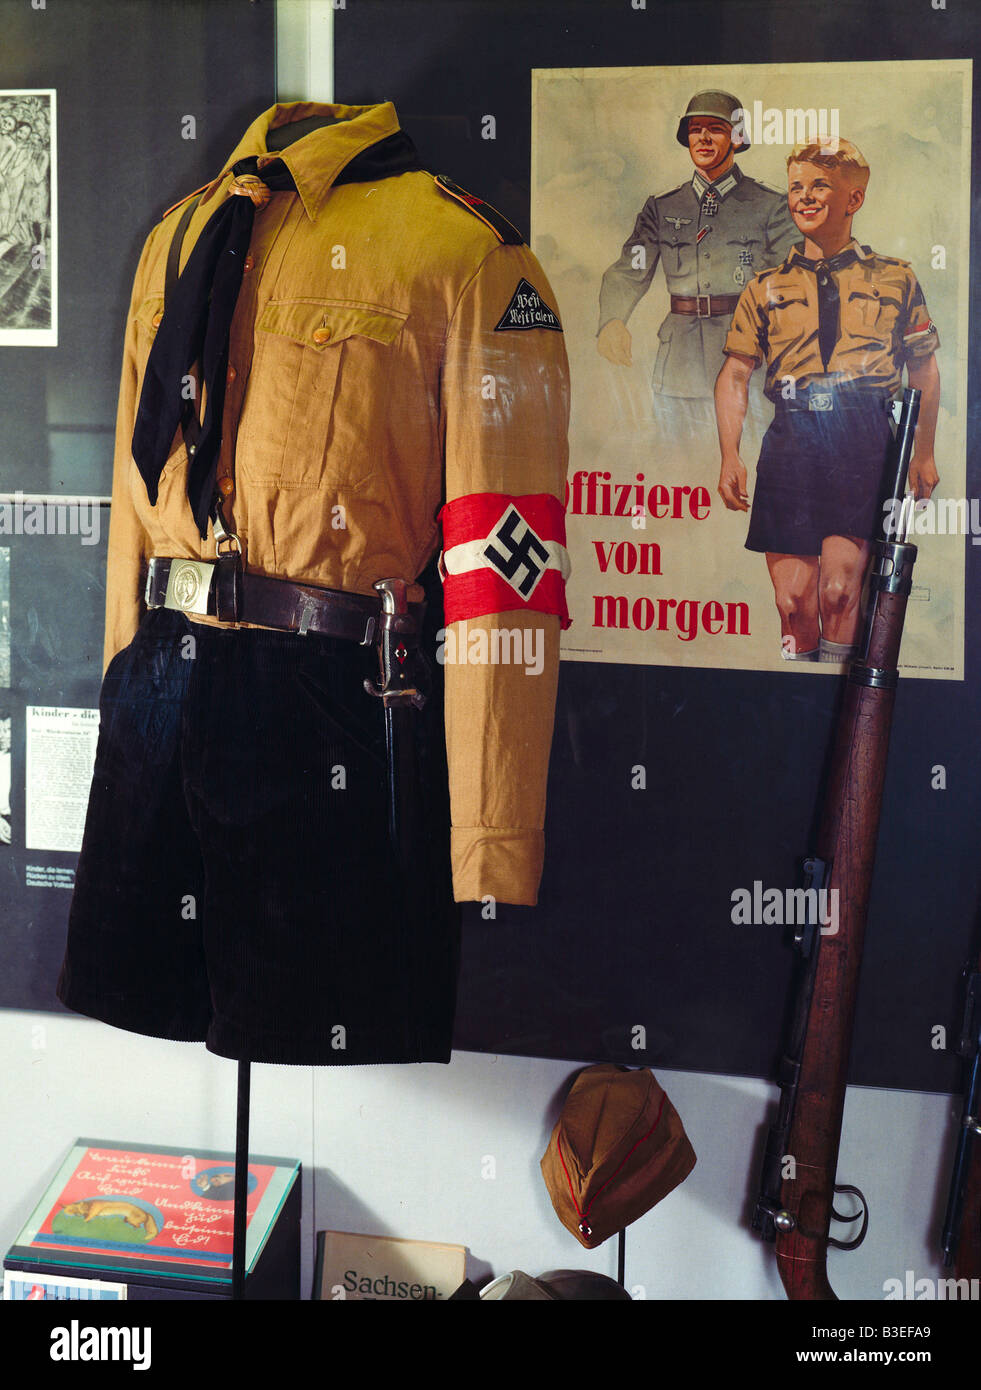 Uniforme de la Juventud de Hitler. Foto de stock